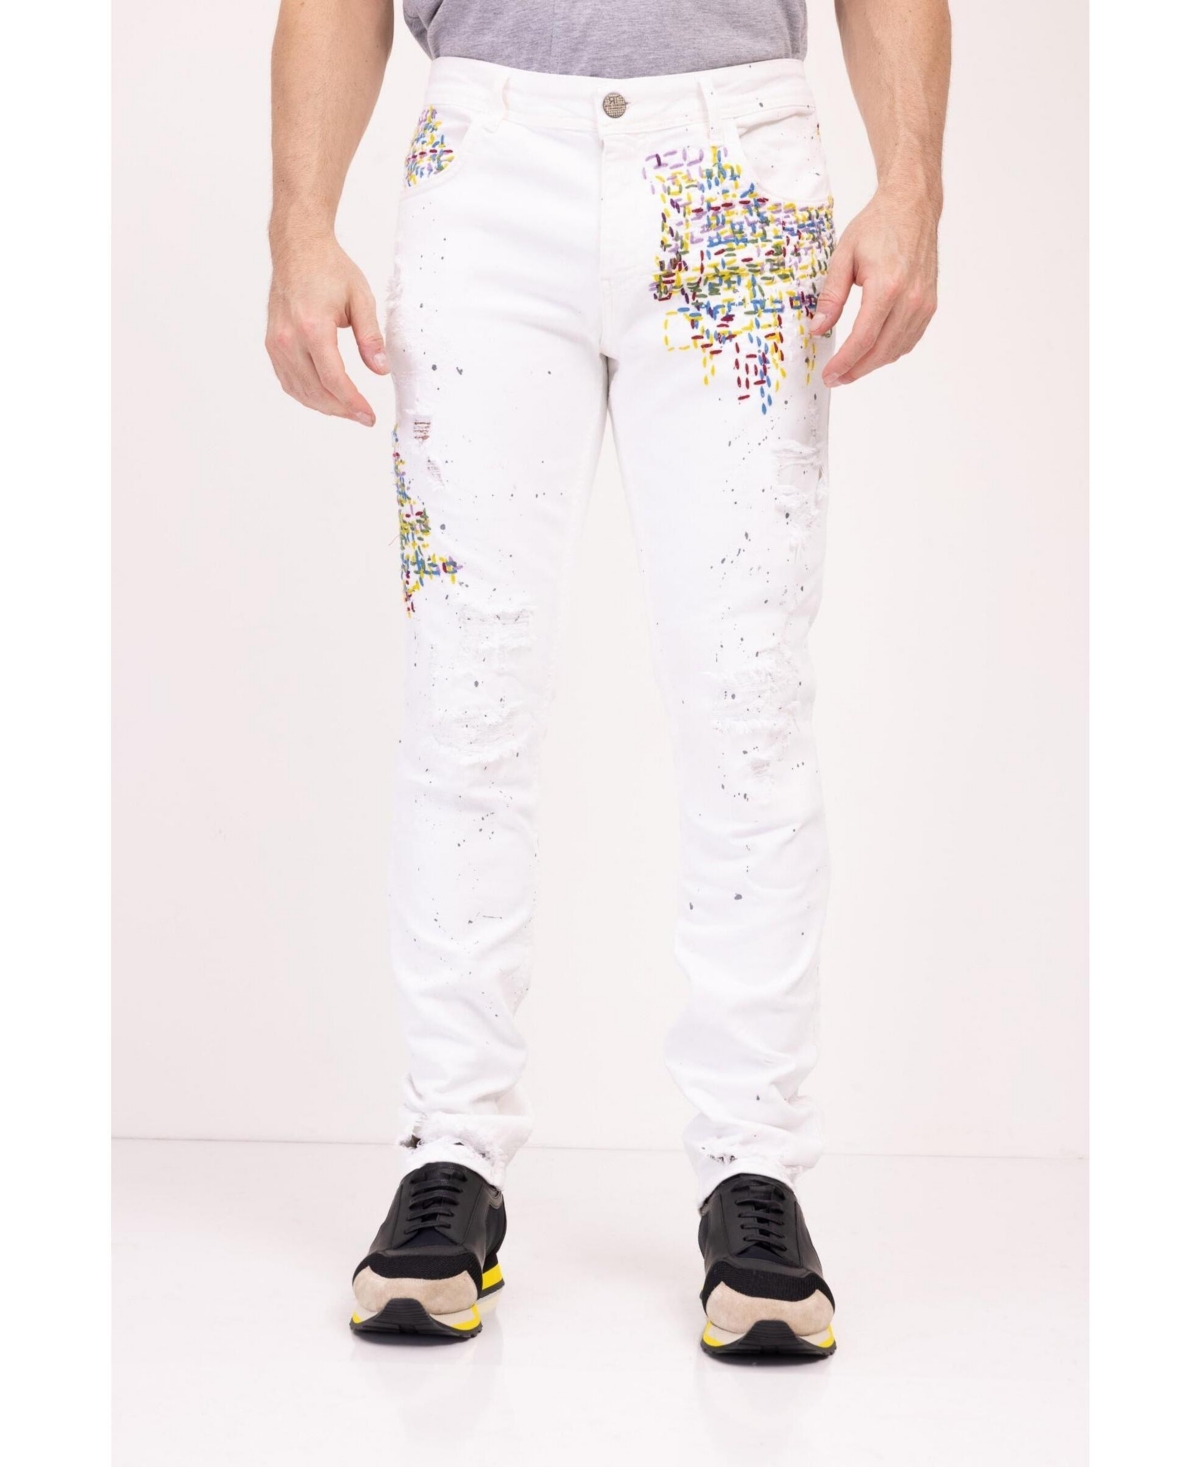 Men's Modern Embroidered Denim Jeans - White